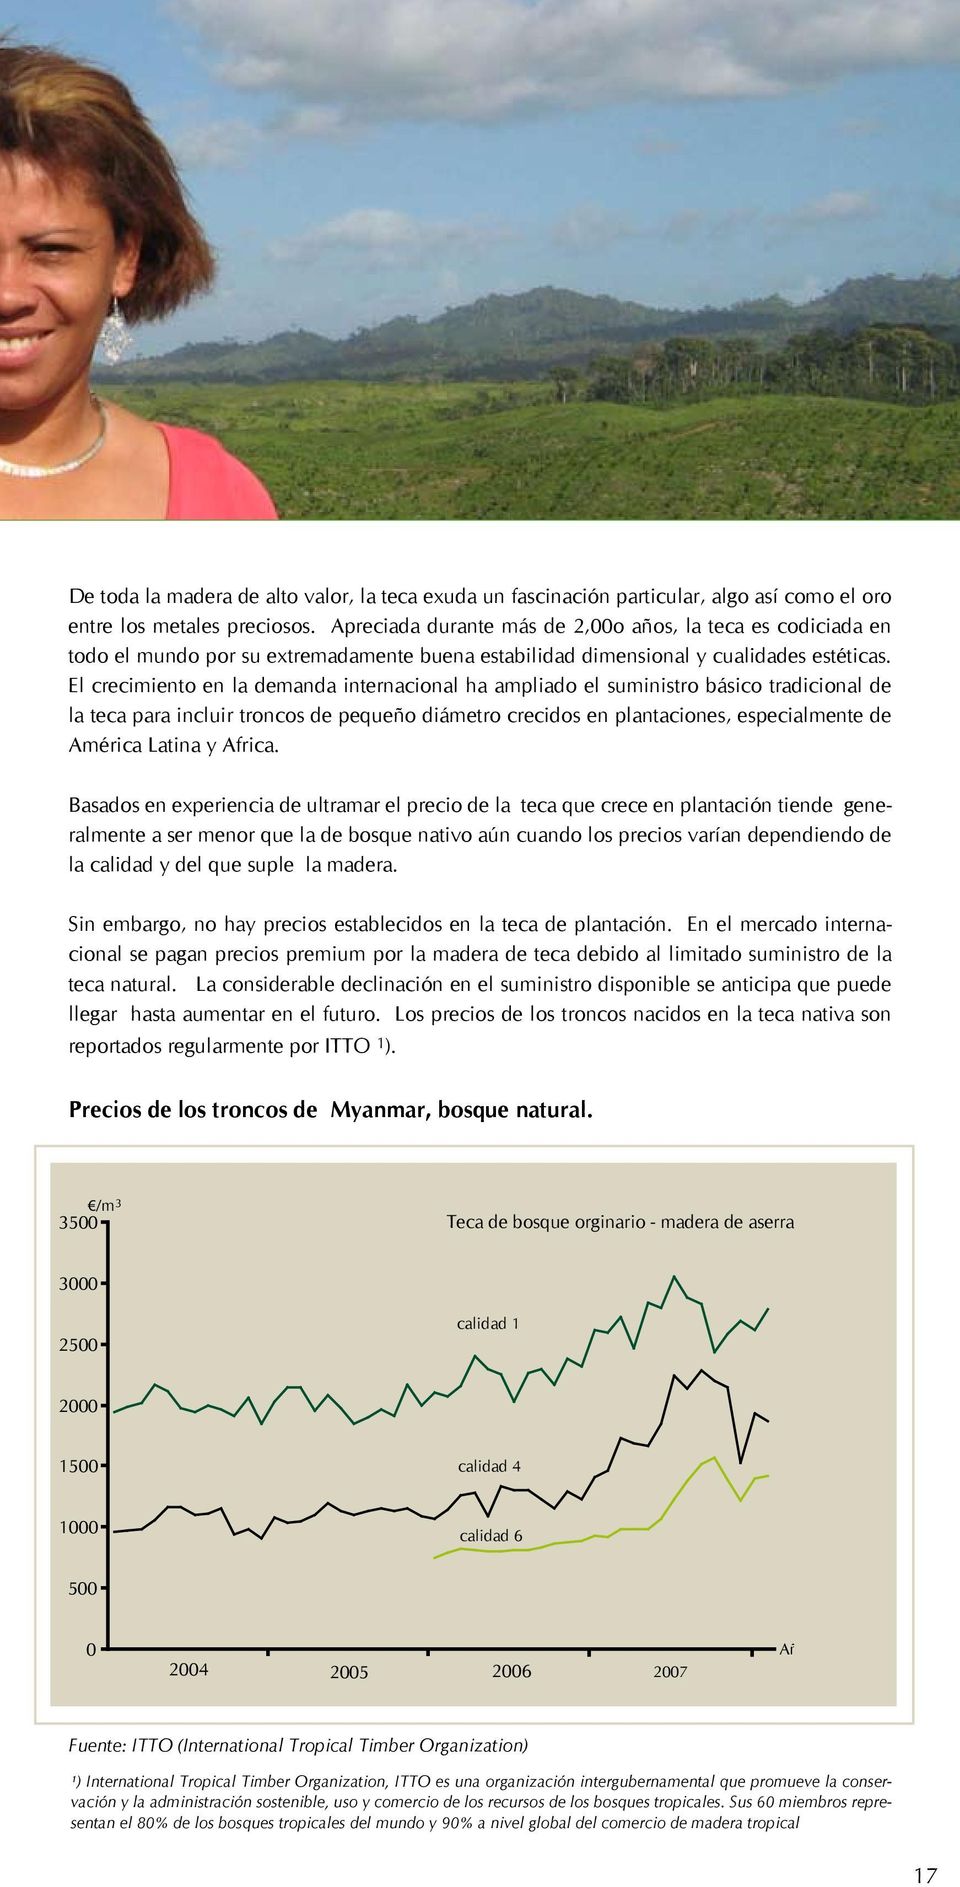 El crecimiento en la demanda internacional ha ampliado el suministro básico tradicional de la teca para incluir troncos de pequeño diámetro crecidos en plantaciones, especialmente de América Latina y